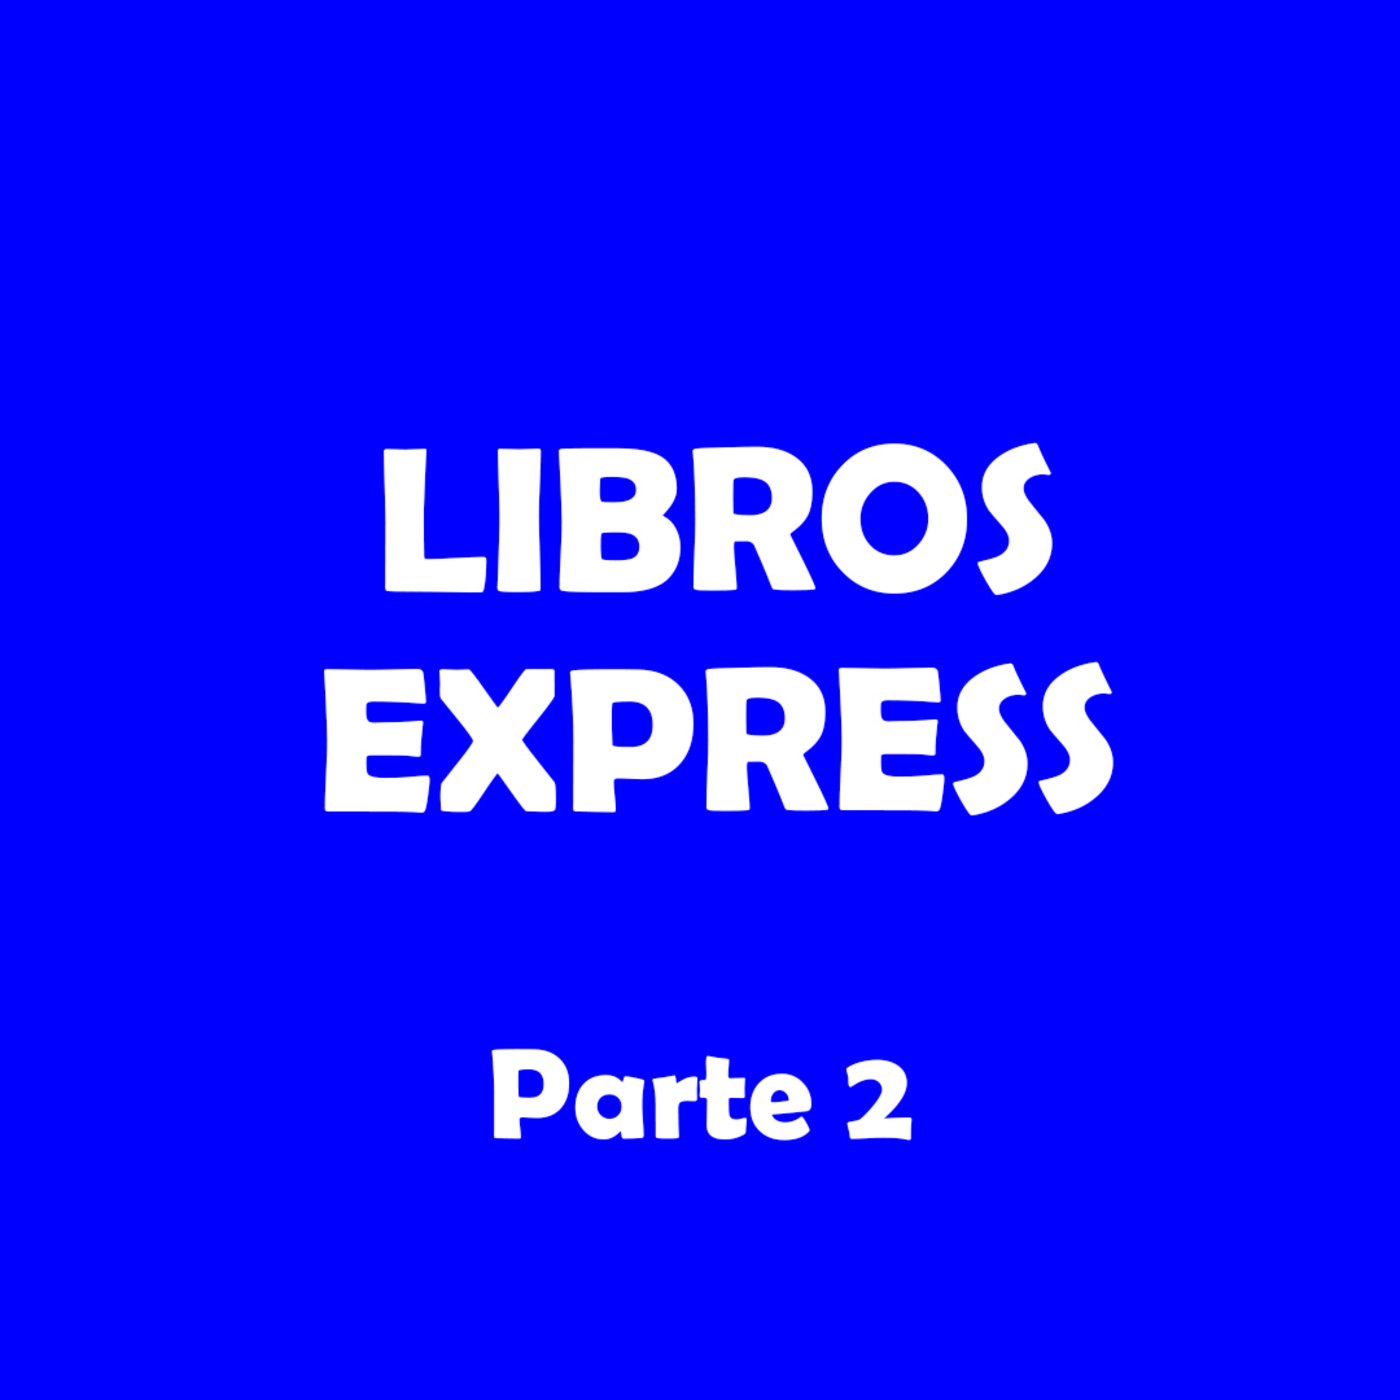 Libros Express Parte 2